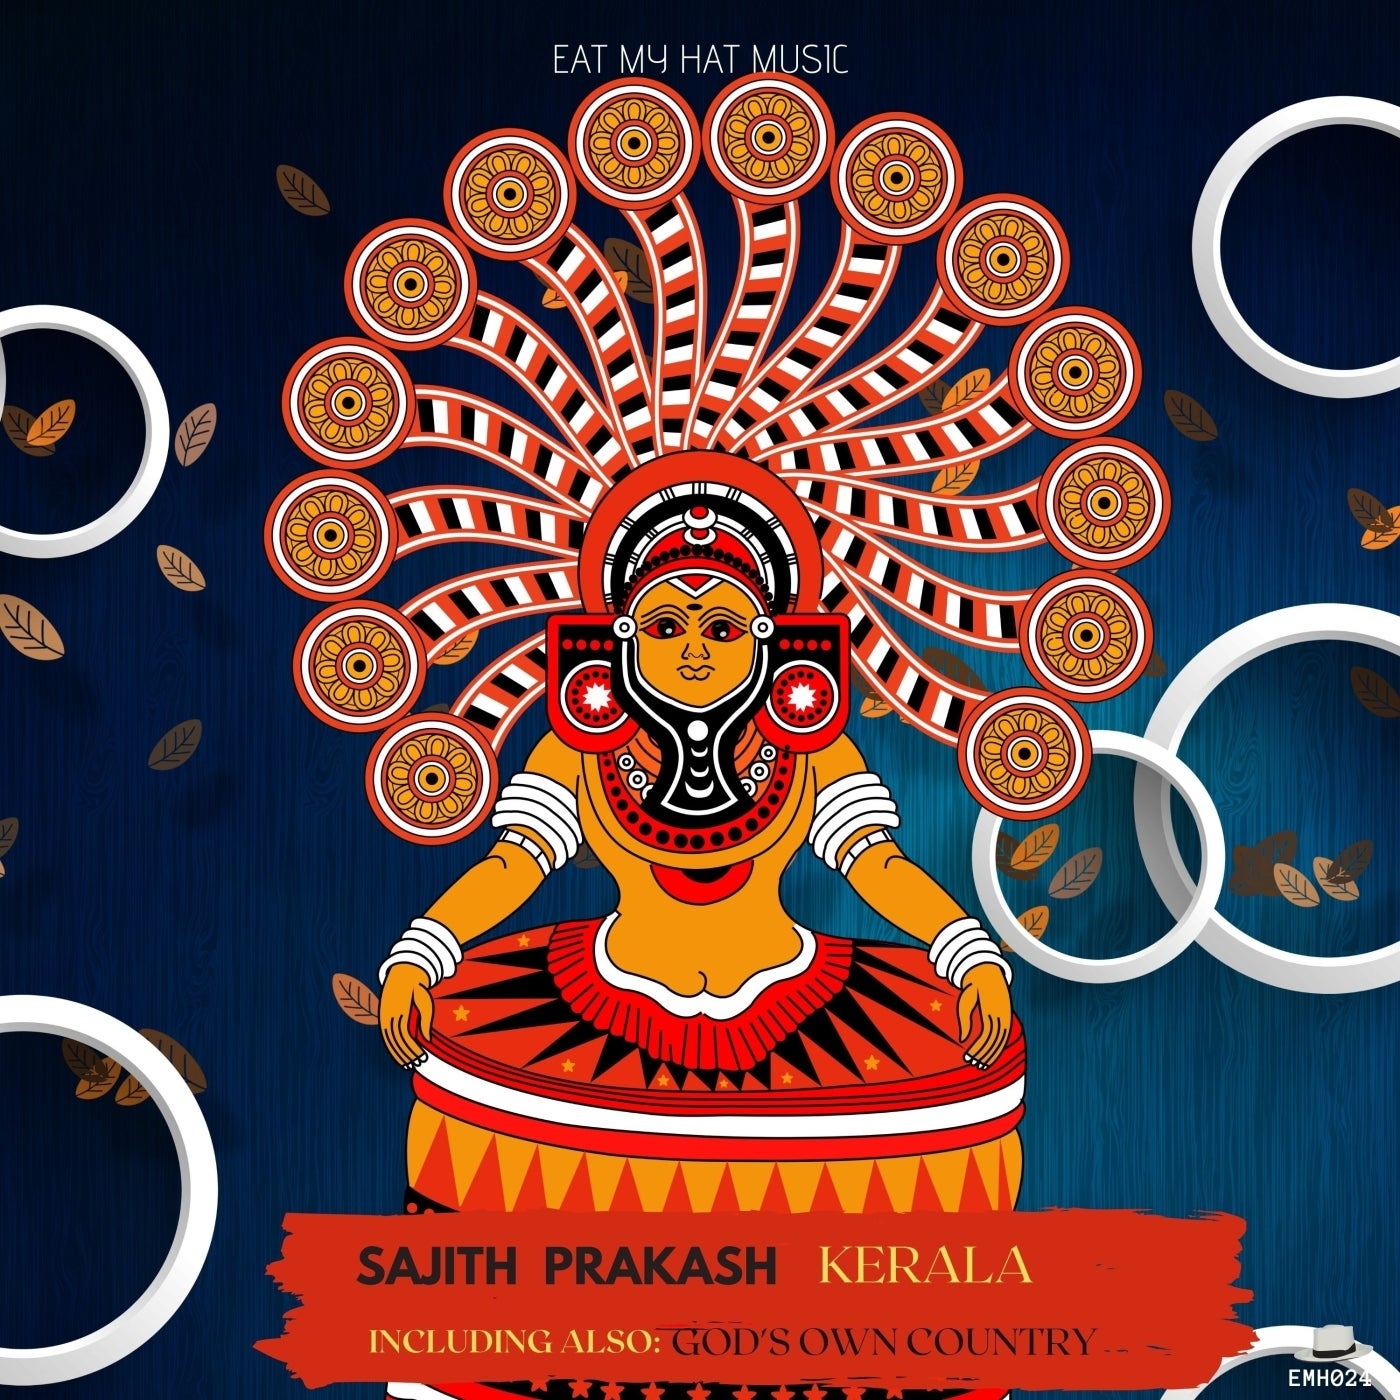 Sajith Prakash – Kerala [EMH024]